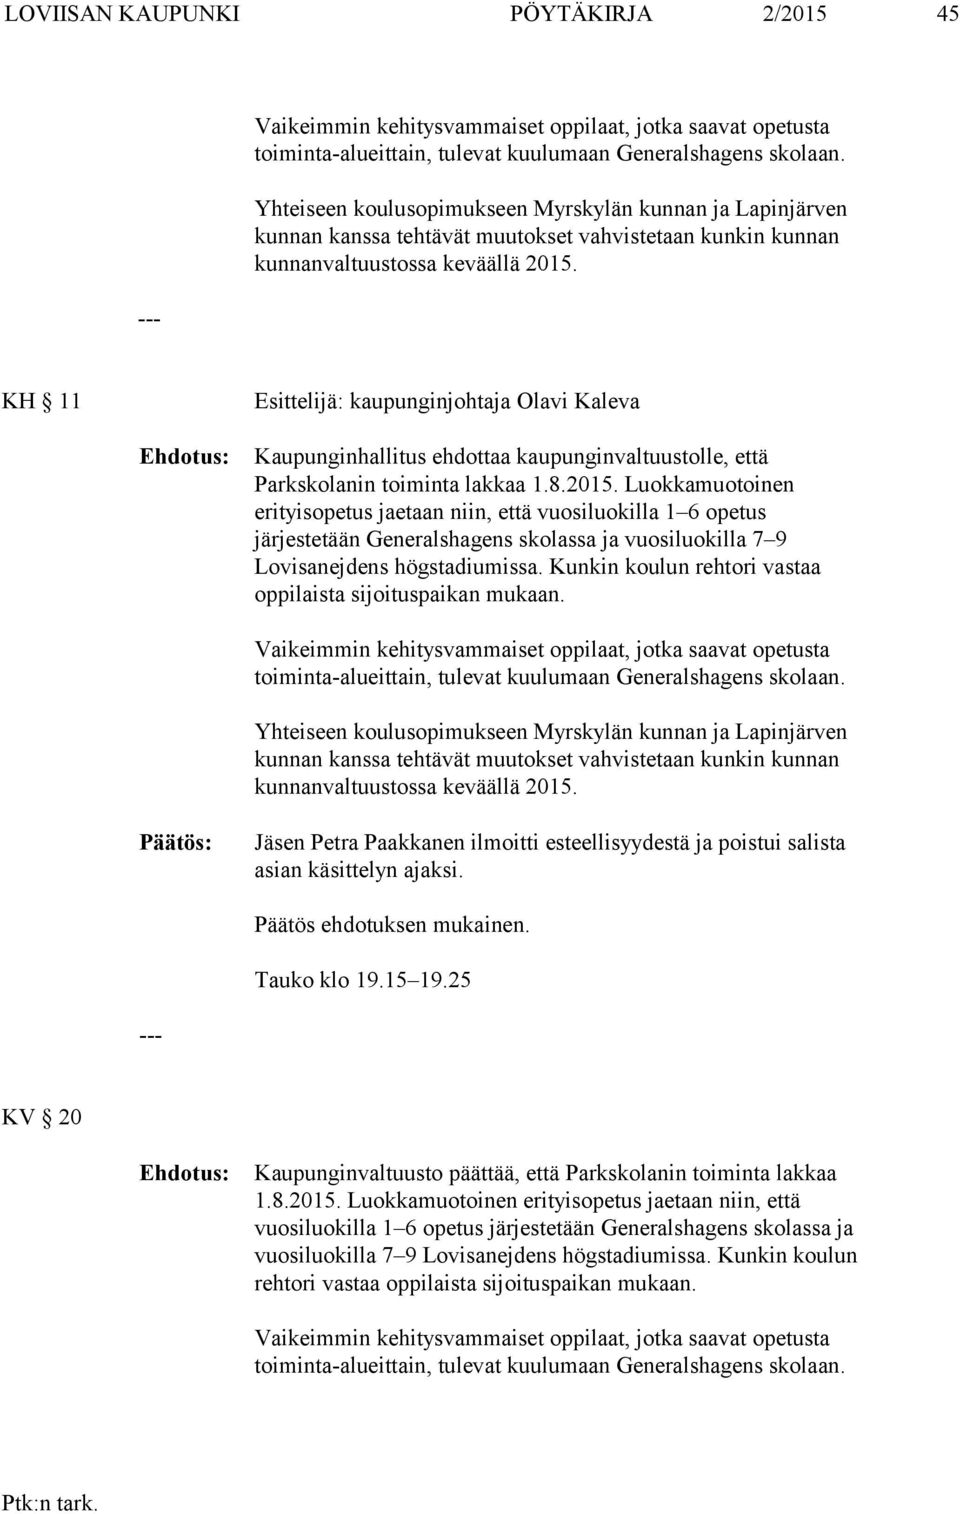 KH 11 Esittelijä: kaupunginjohtaja Olavi Kaleva Kaupunginhallitus ehdottaa kaupunginvaltuustolle, että Parkskolanin toiminta lakkaa 1.8.2015.